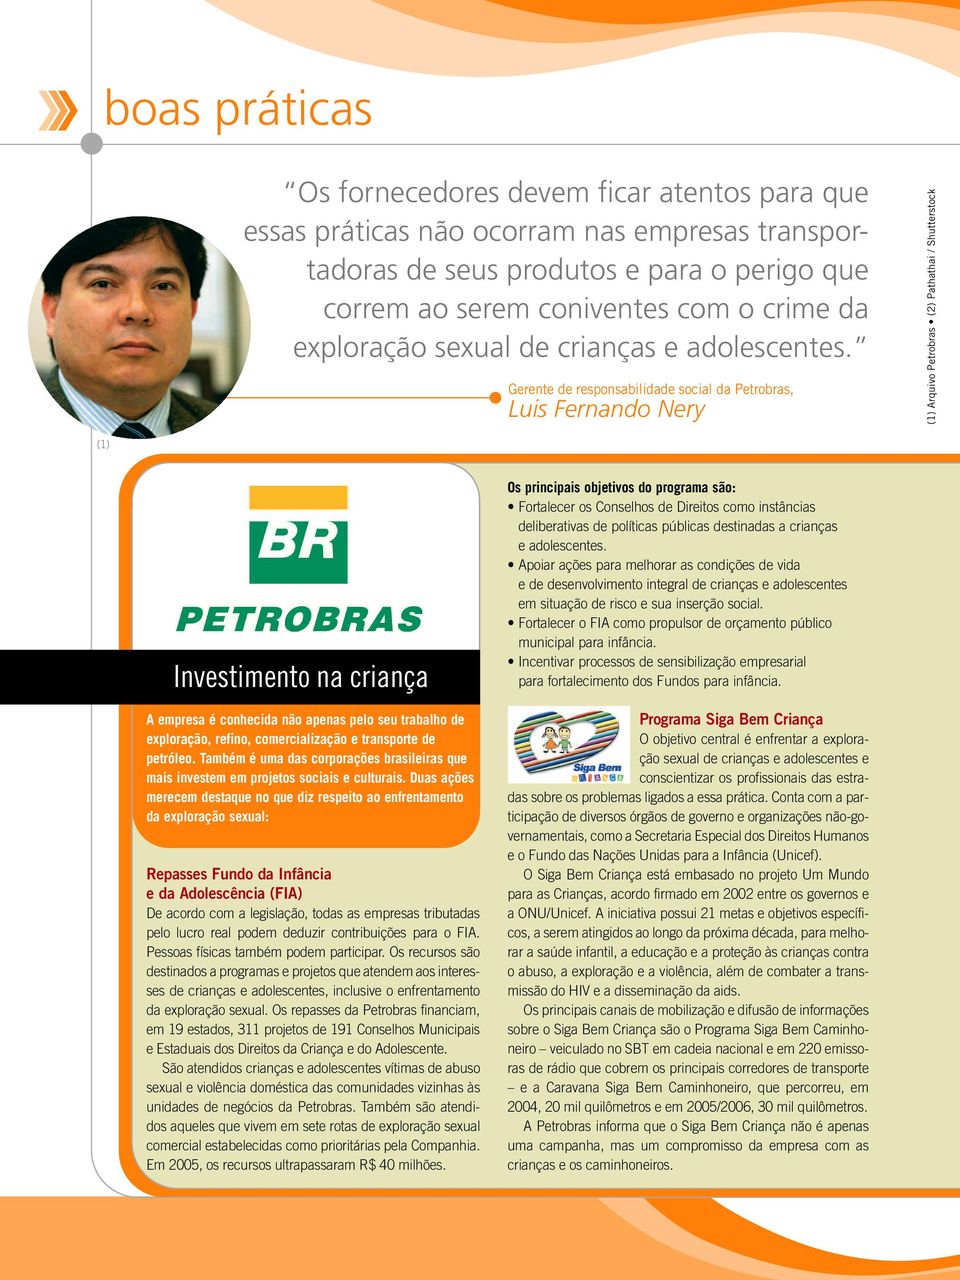 Gerente de responsabilidade social da Petrobras, Luis Fernando Nery (1) Arquivo Petrobras (2) Pathathai / Shutterstock (1) Investimento na criança A empresa é conhecida não apenas pelo seu trabalho